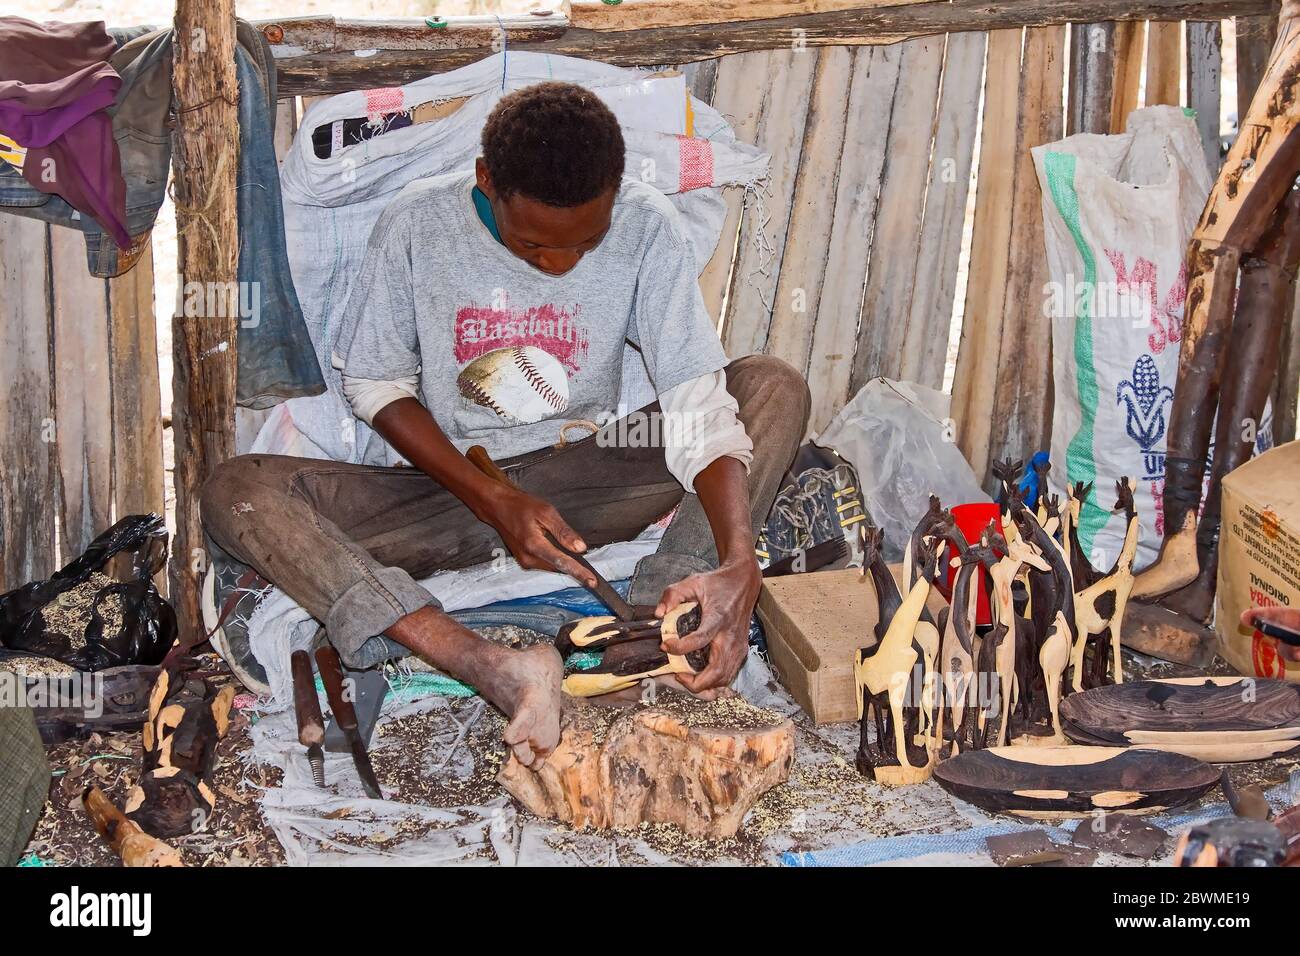 Homme sculptant le bois d'ironce; formes de girafe; artisan qualifié, travail, profession; travail, art animal, assis sur terre,Tanzanie; Afrique Banque D'Images